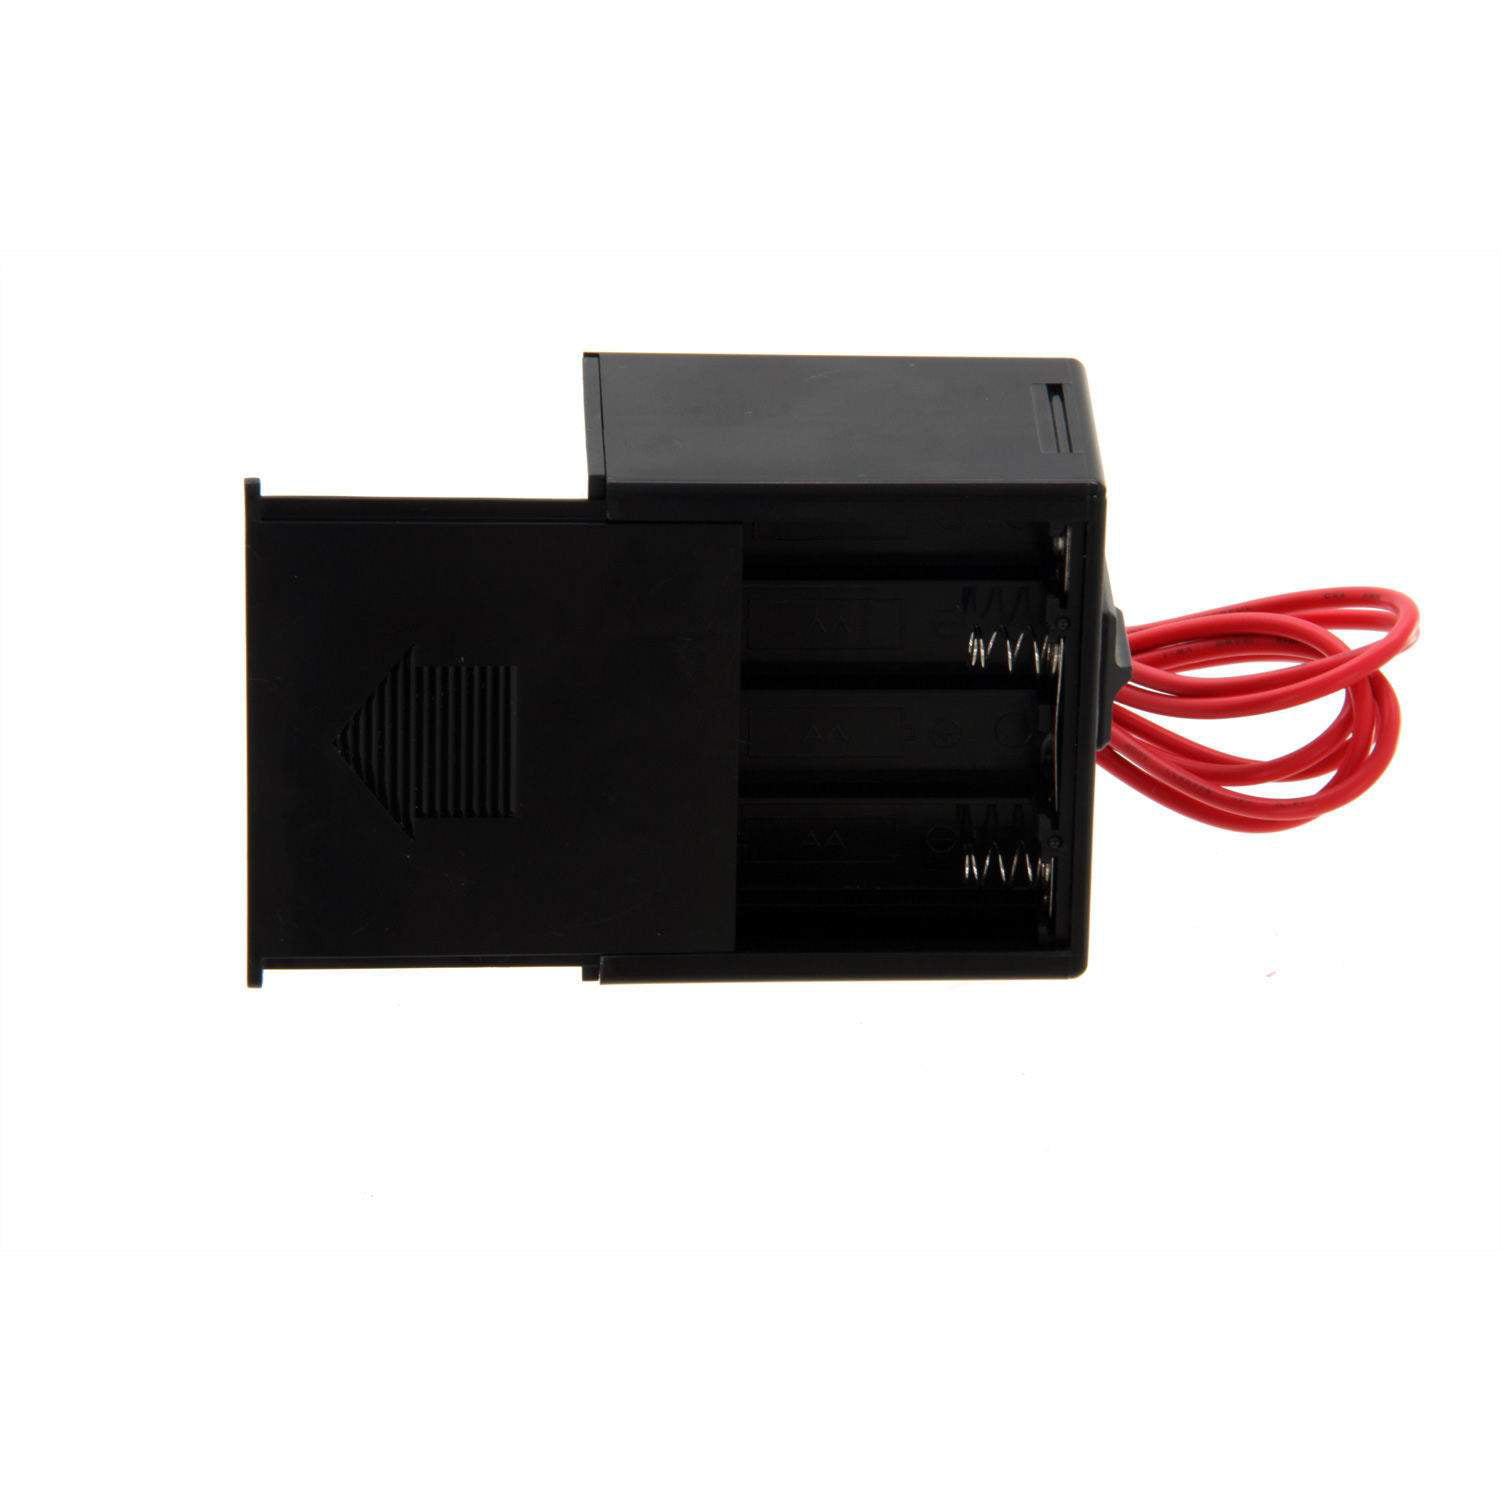 SkyTech Smart-Batt II III Fireplace Remote Kit for Heat-N-Glo 9800337 New 